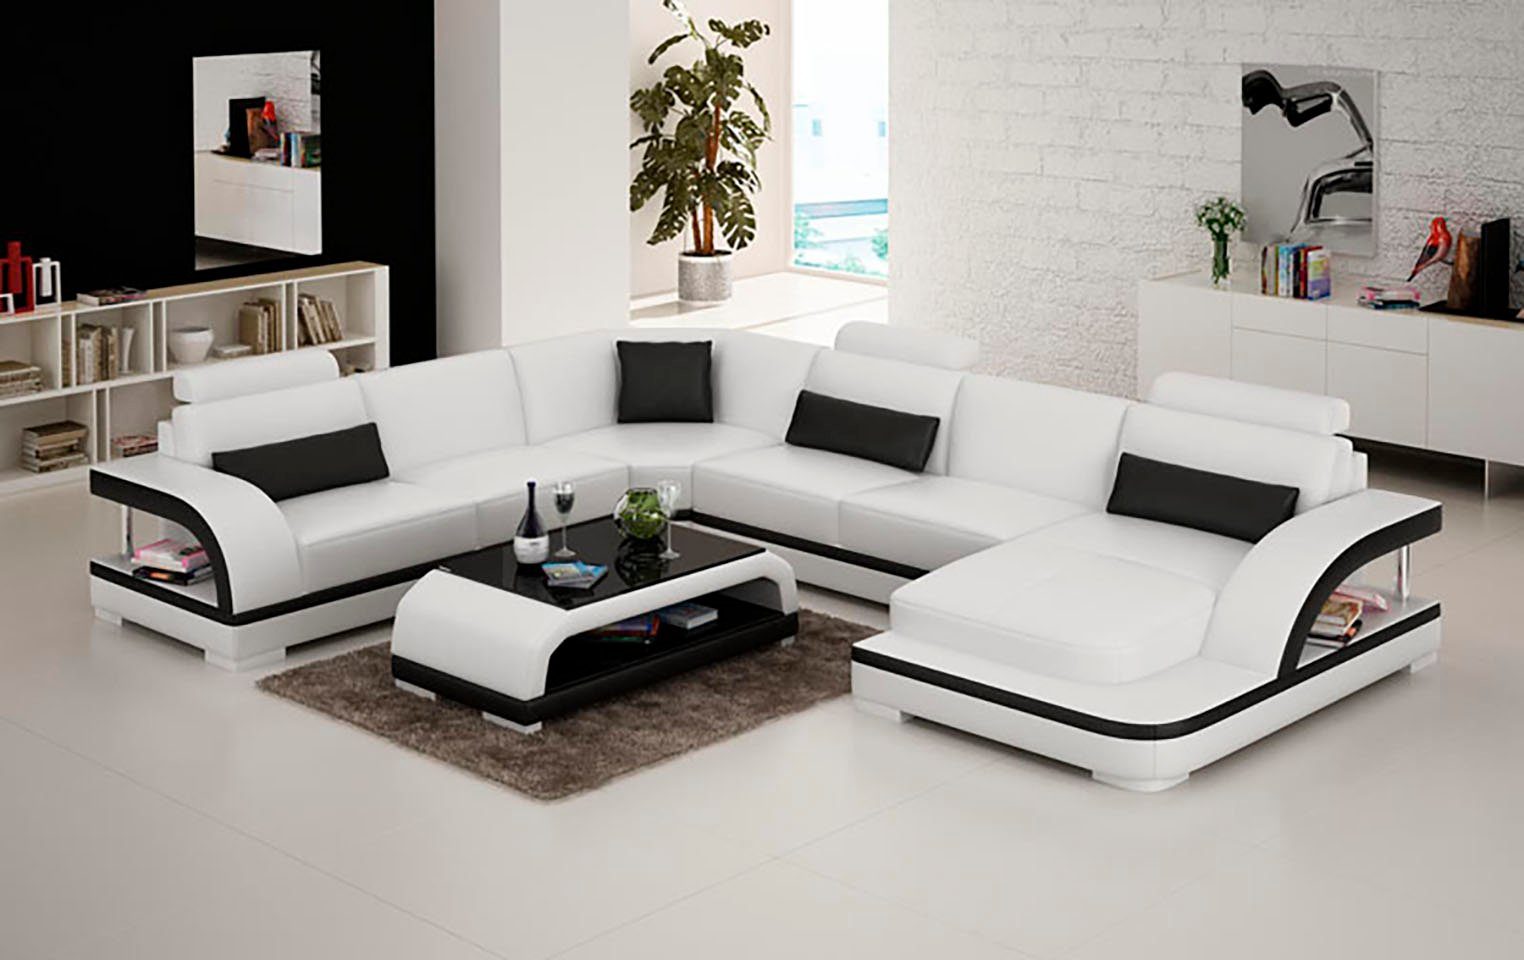 Sofas Couch Ecksofa, Modern JVmoebel Leder Sofa UForm Design Eck Eck Wohnlandschaft